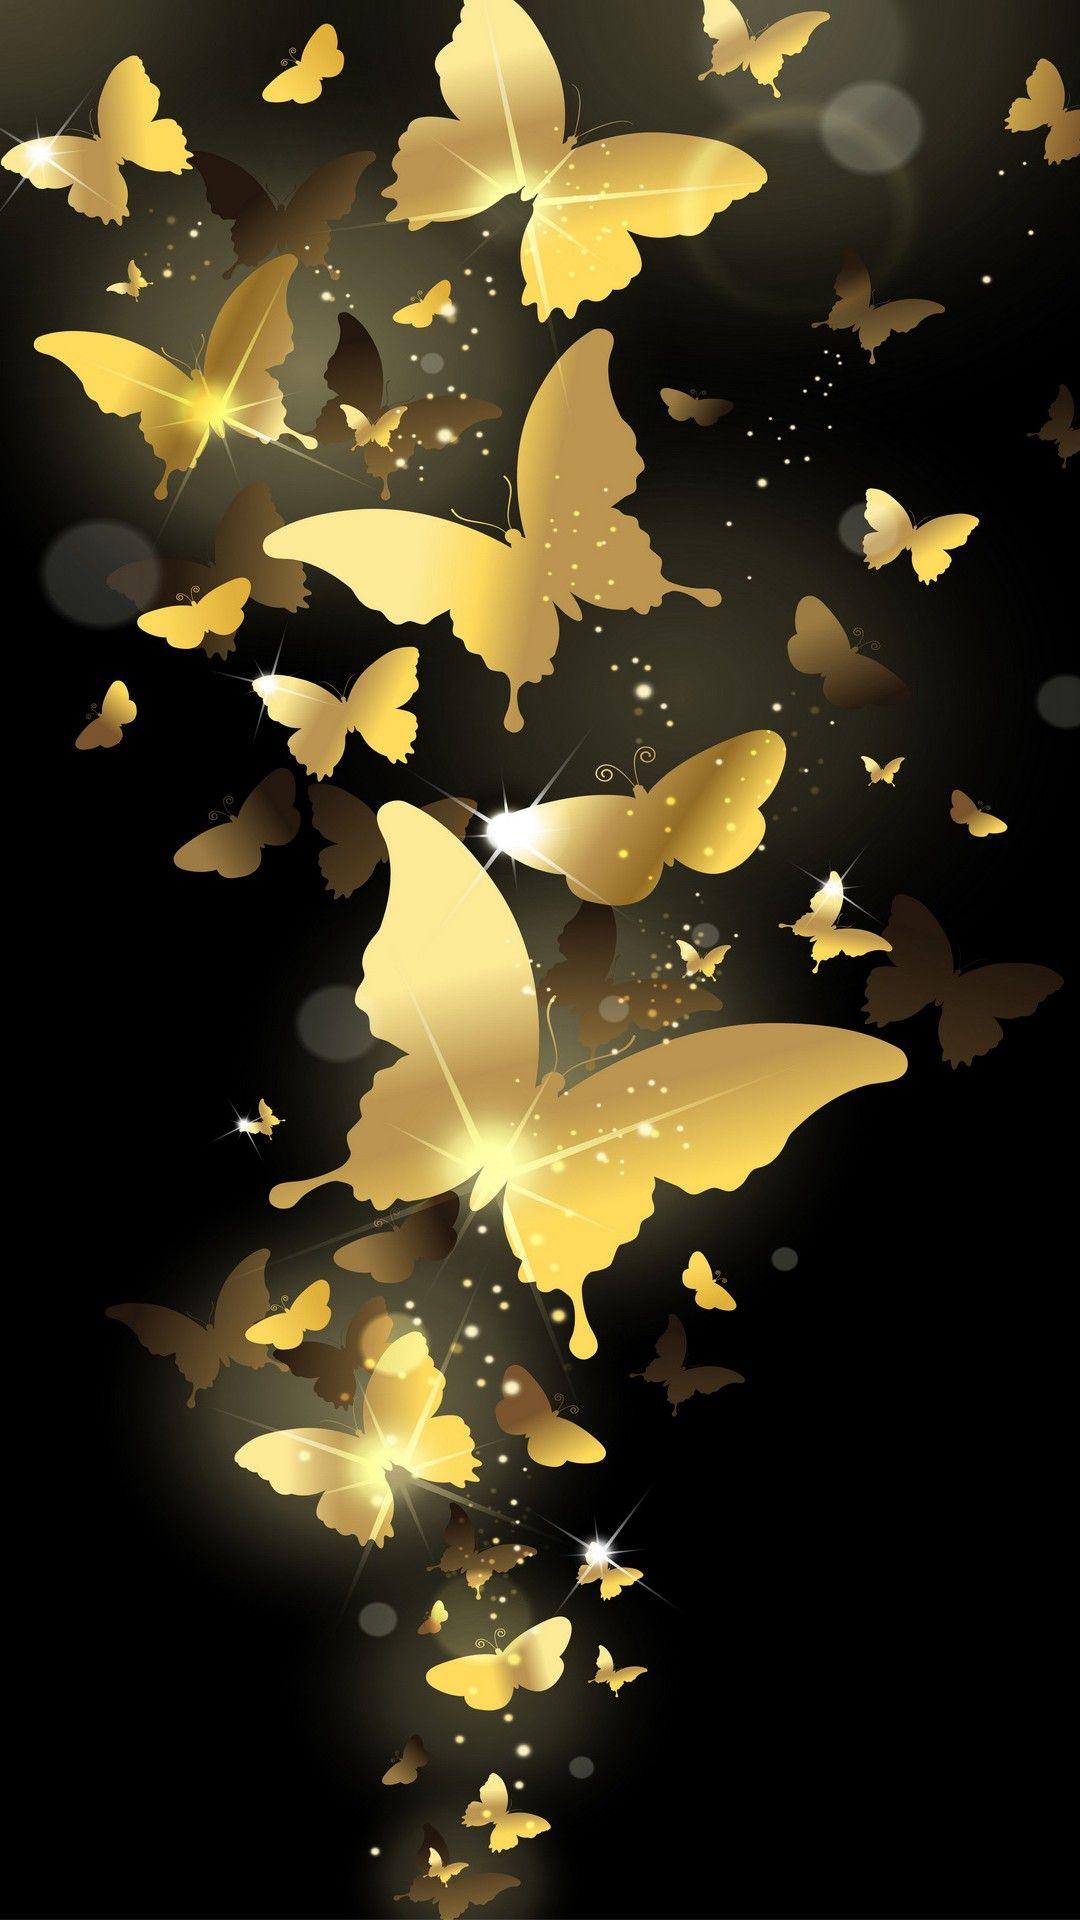 Flying Golden Butterflies